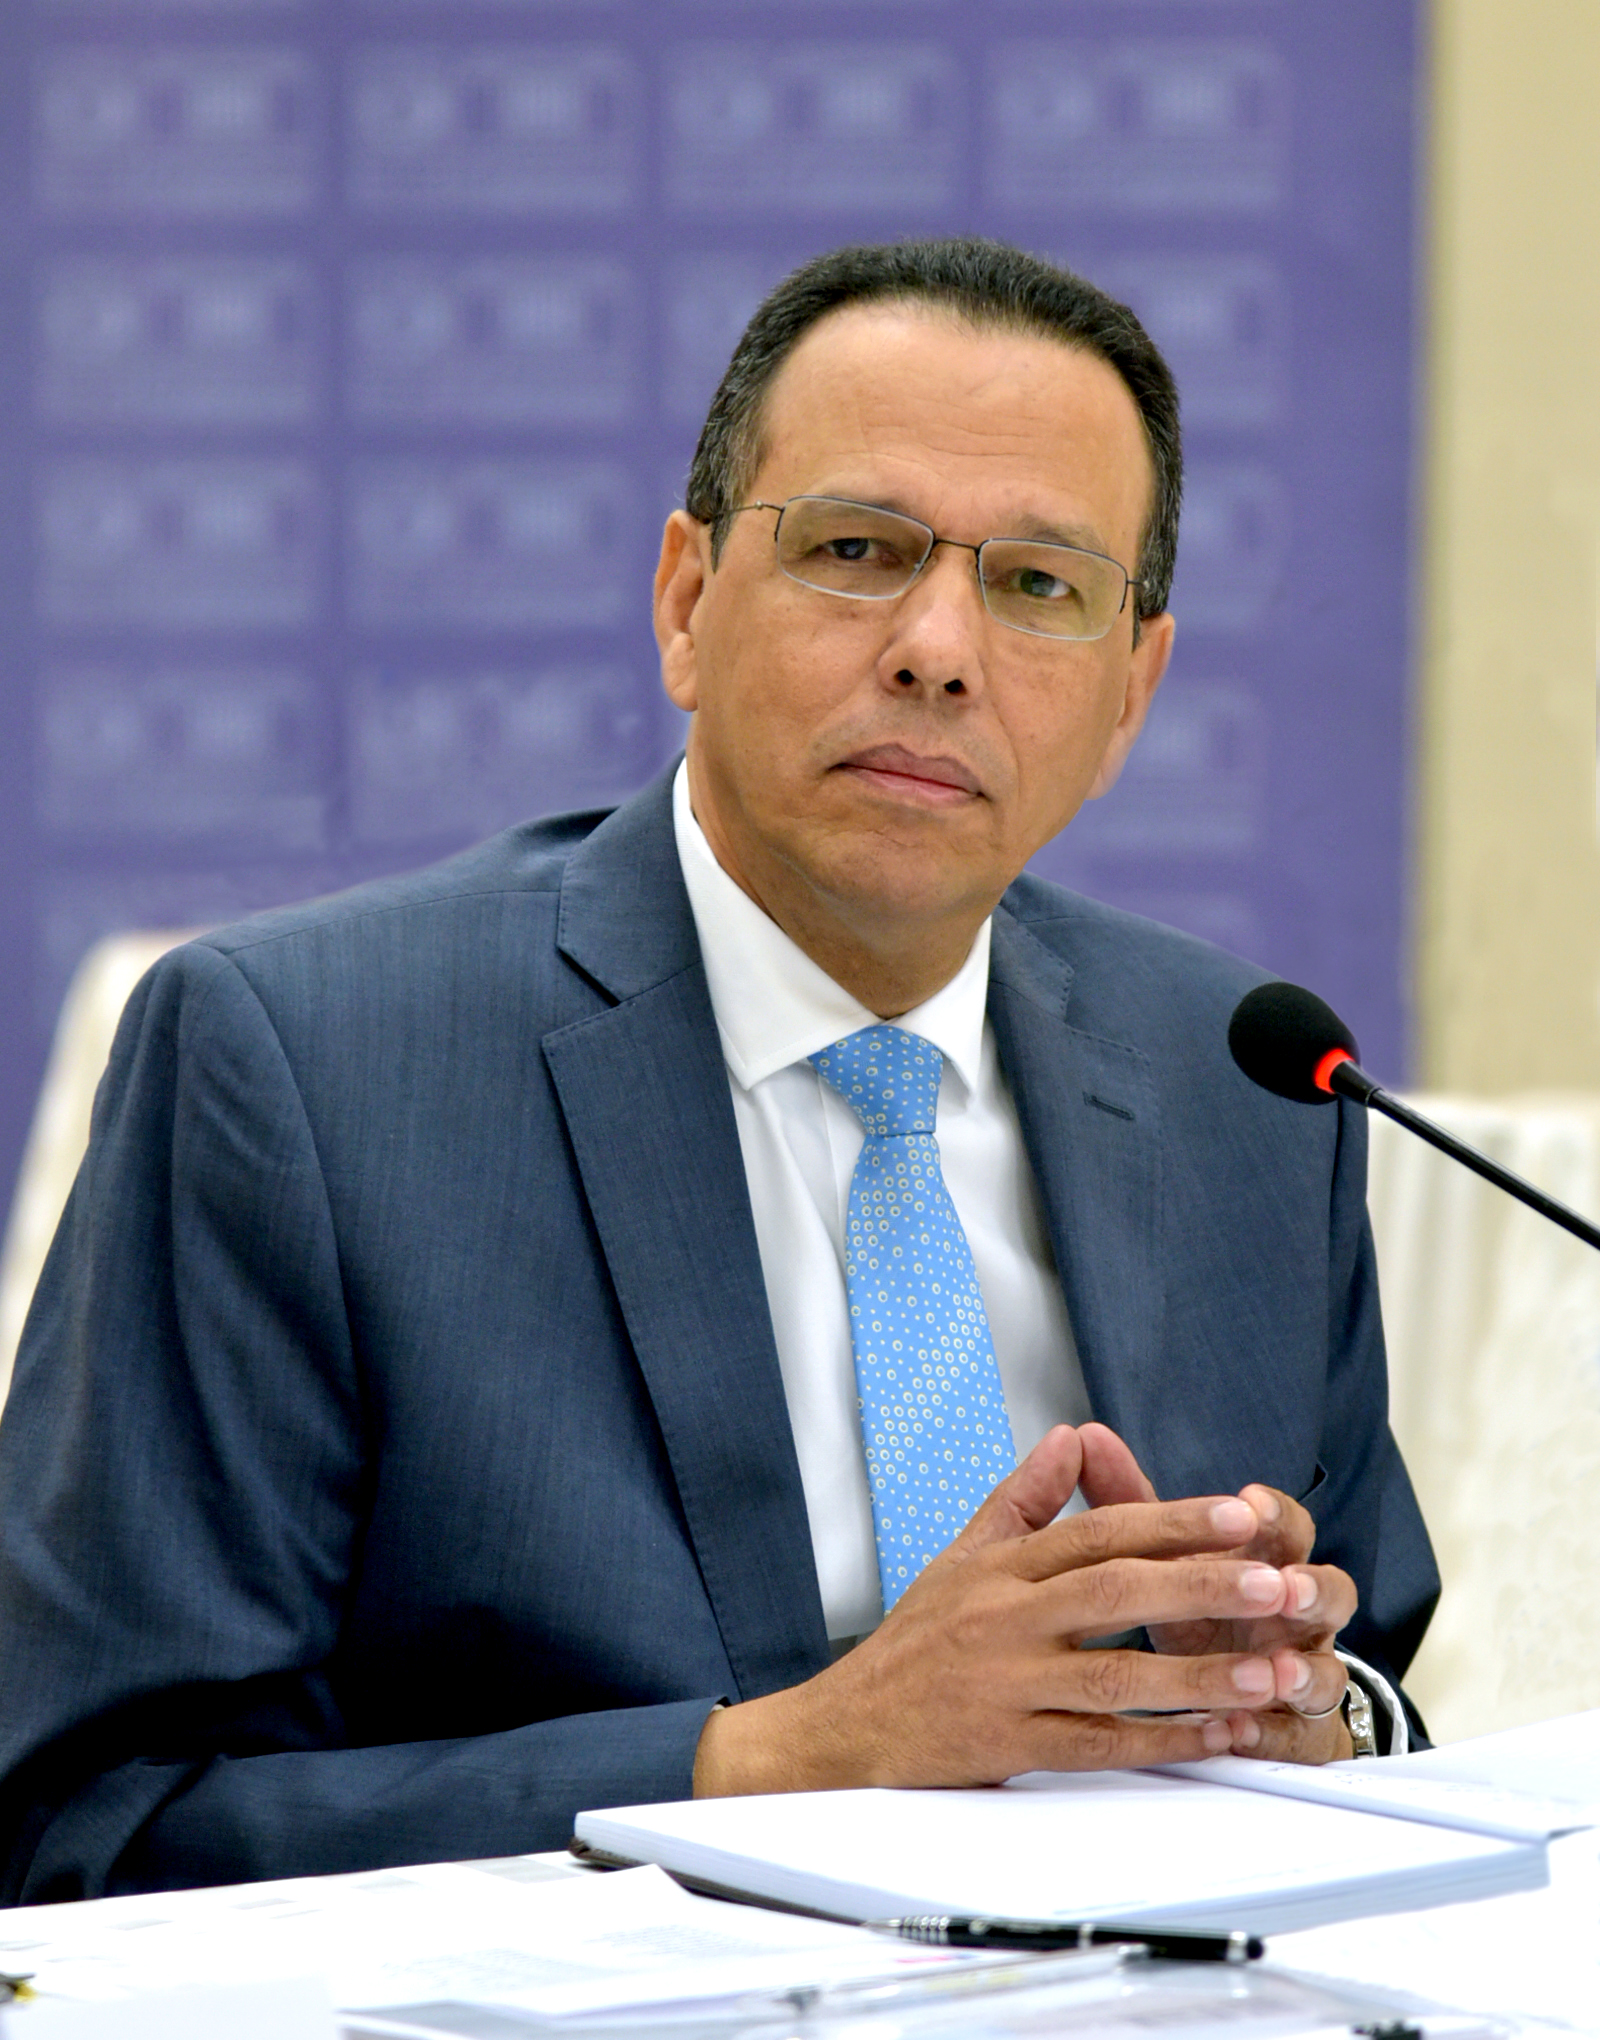  imagen Ministro Antonio Peña Mirabal sentado ofreciendo declaraciones  